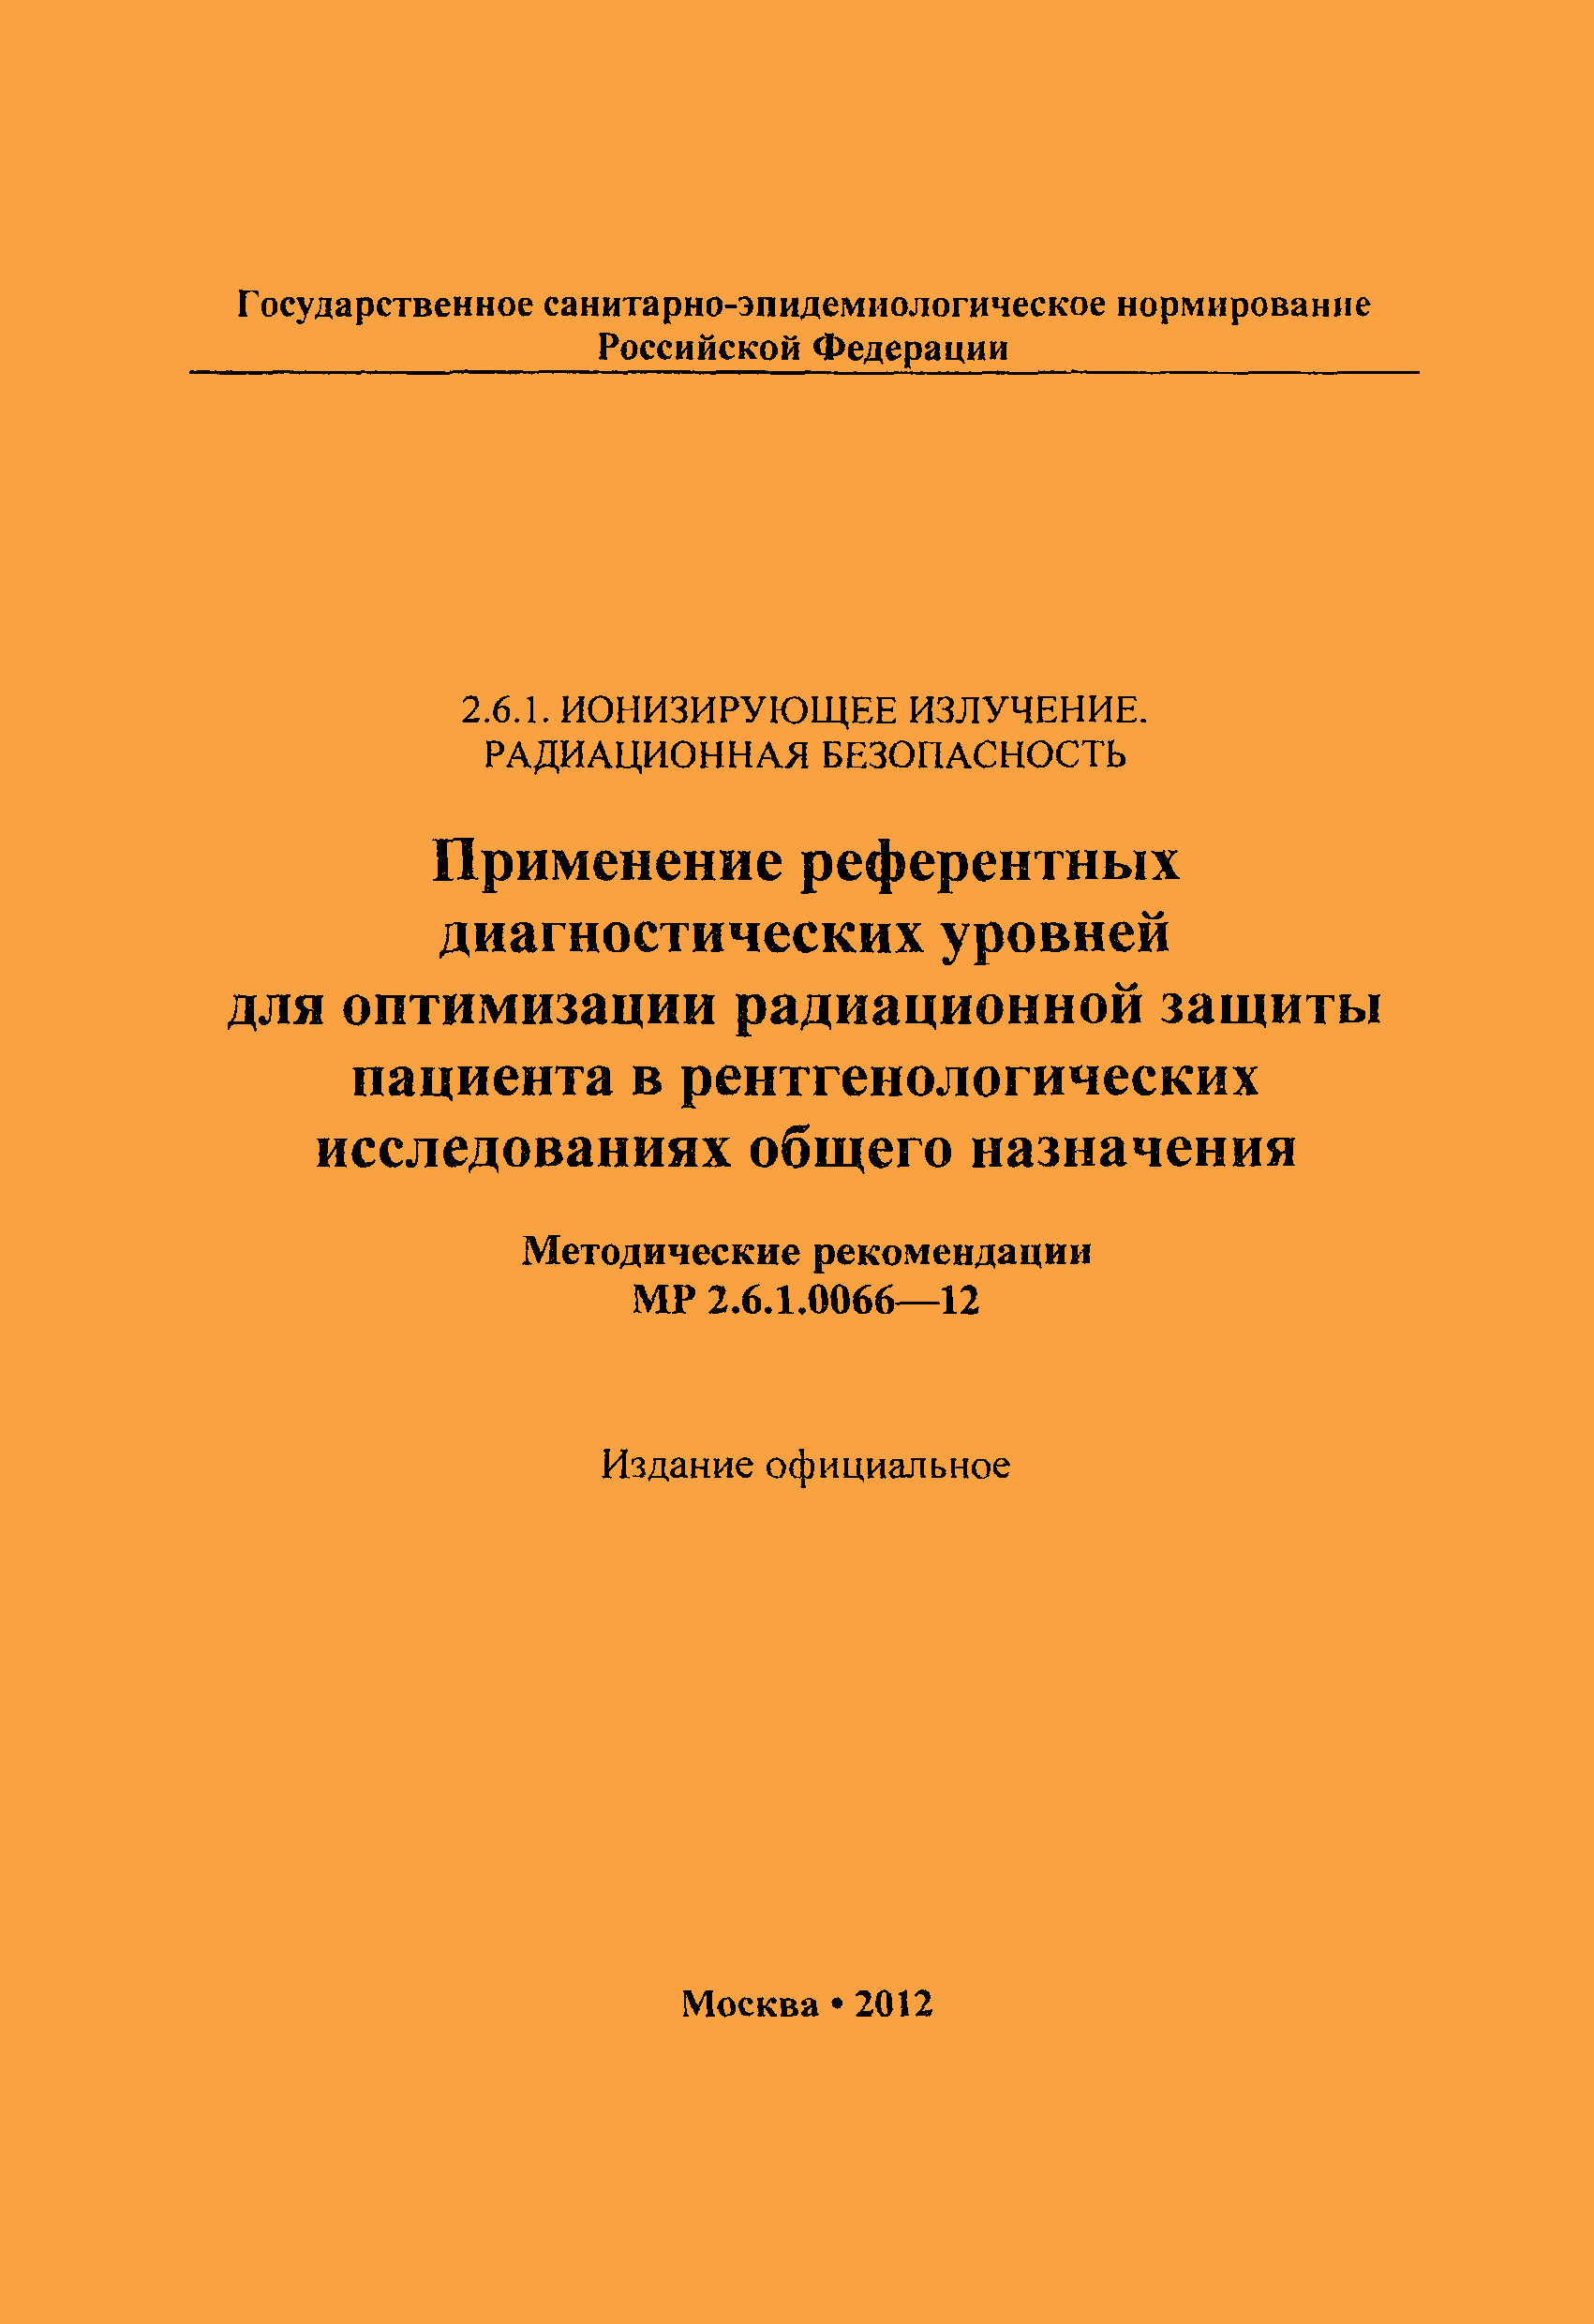 МР 2.6.1.0066-12